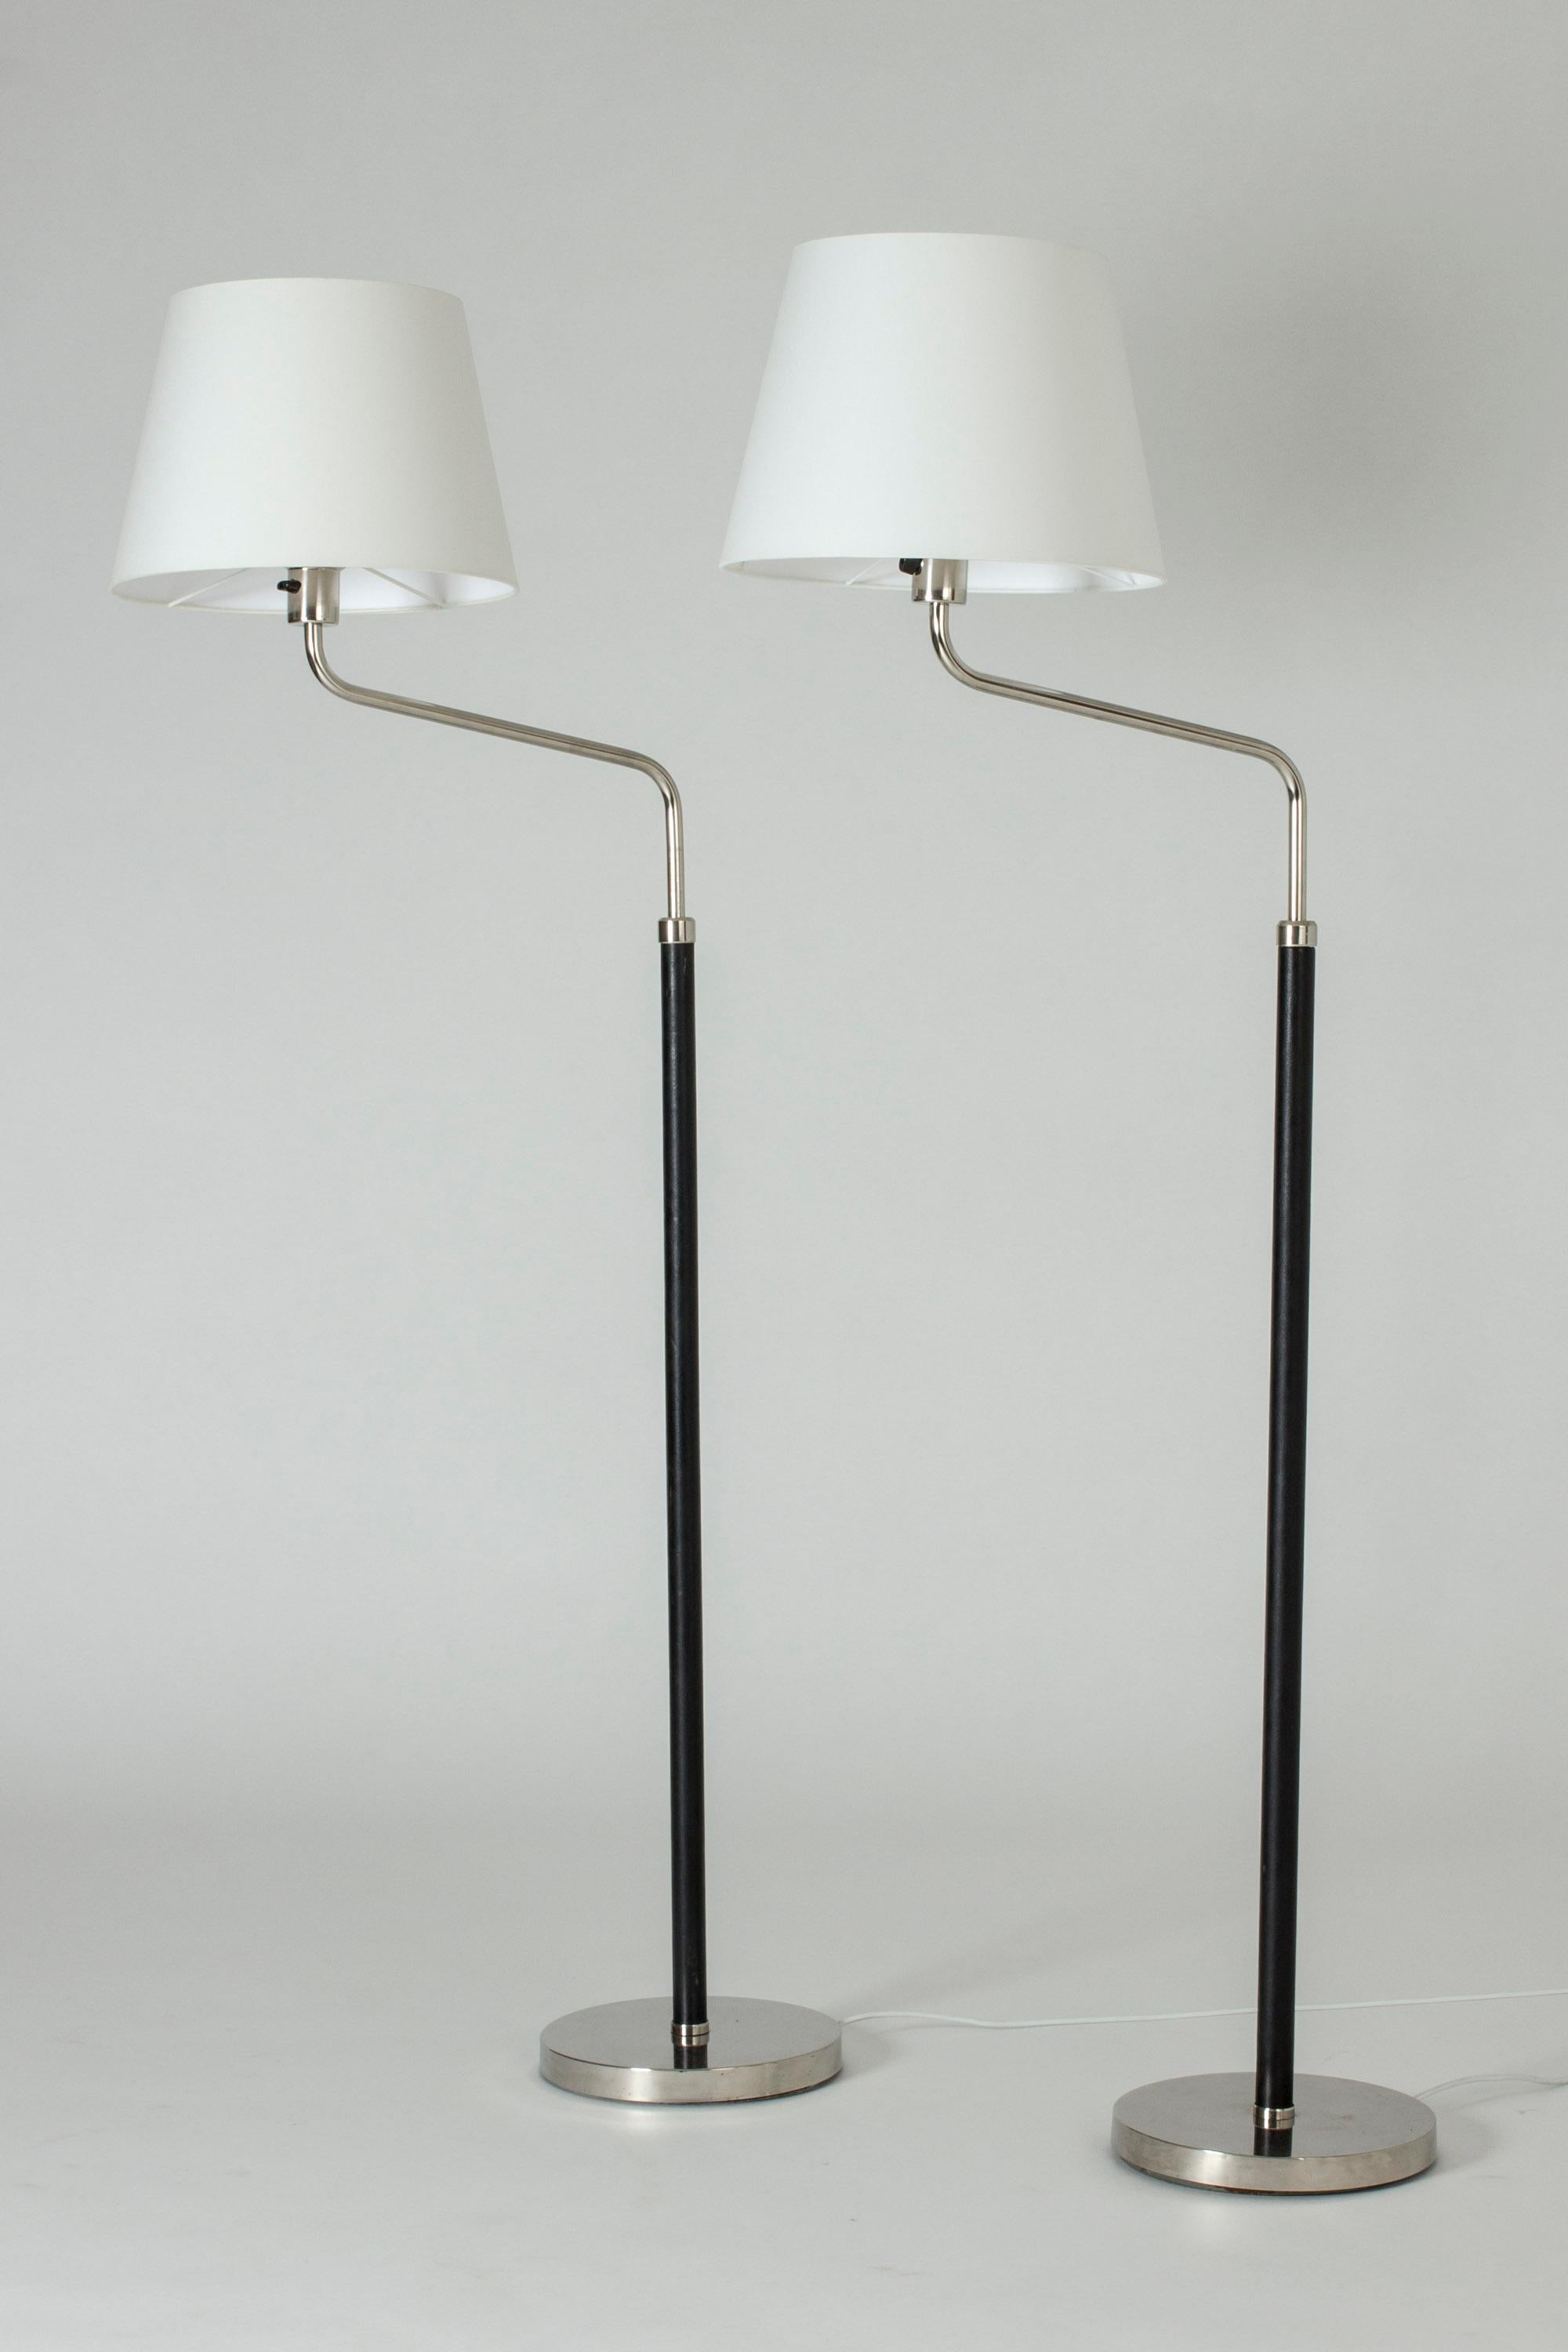 Ein Paar kühle funktionalistische Stehlampen von Bertil Brisborg. Hergestellt aus Stahl mit lederbezogenen Stangen.